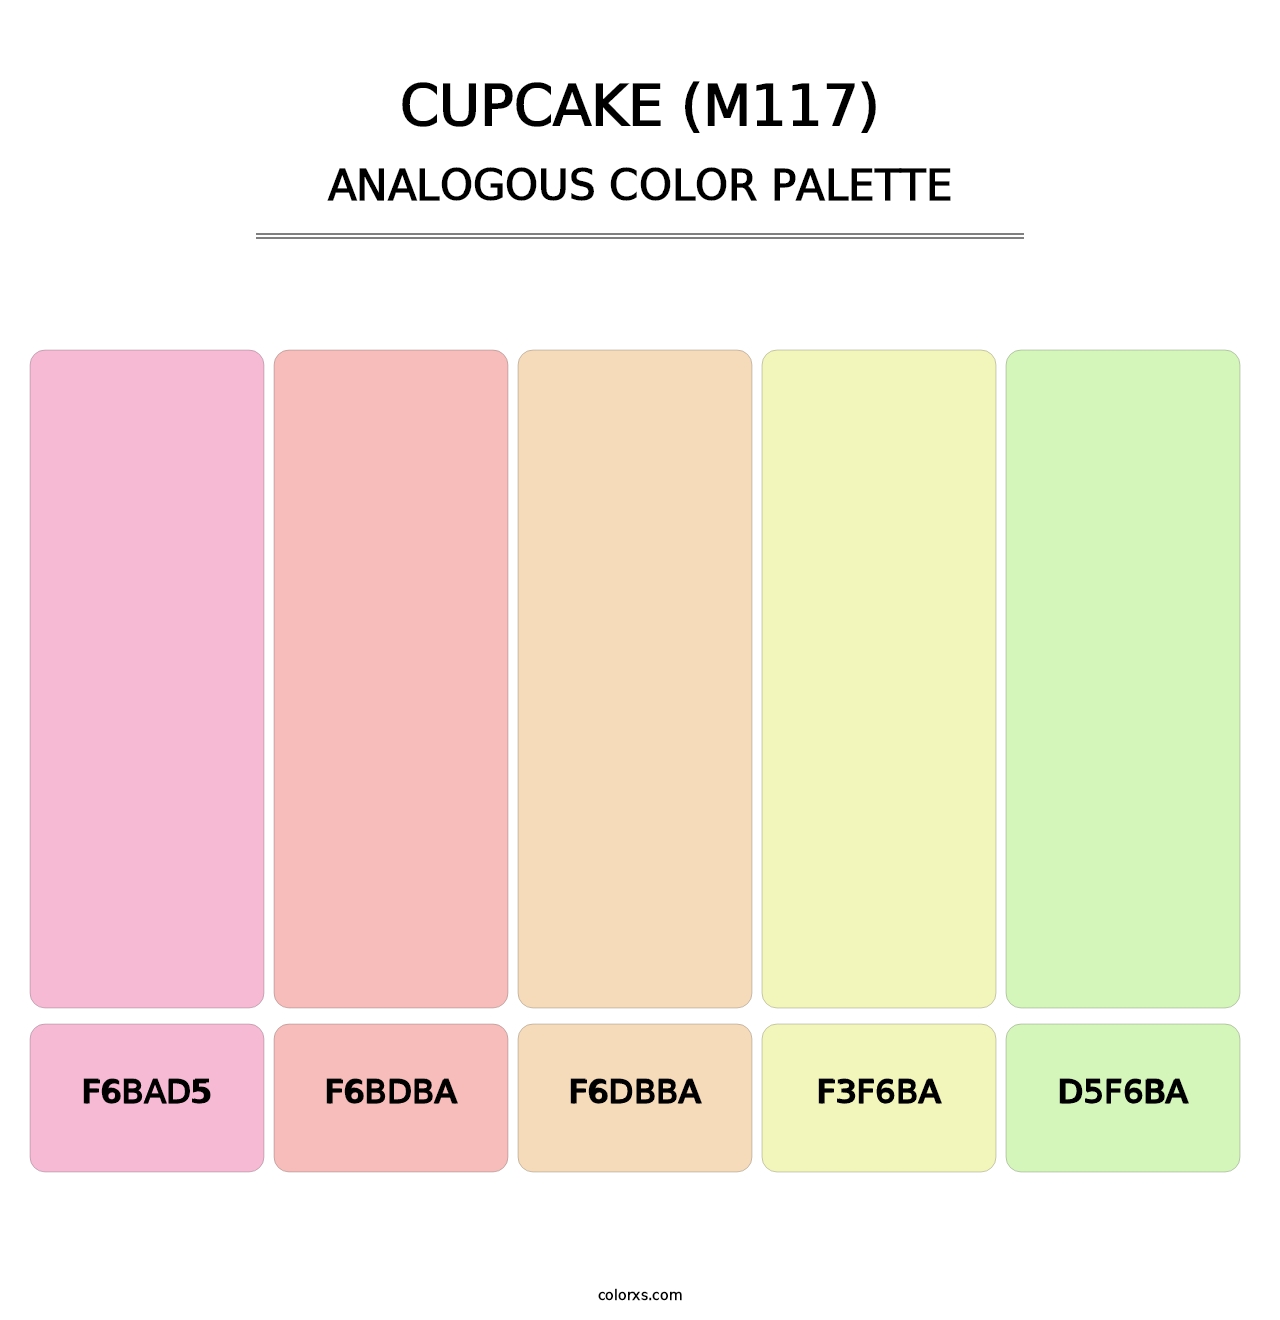 Cupcake (M117) - Analogous Color Palette